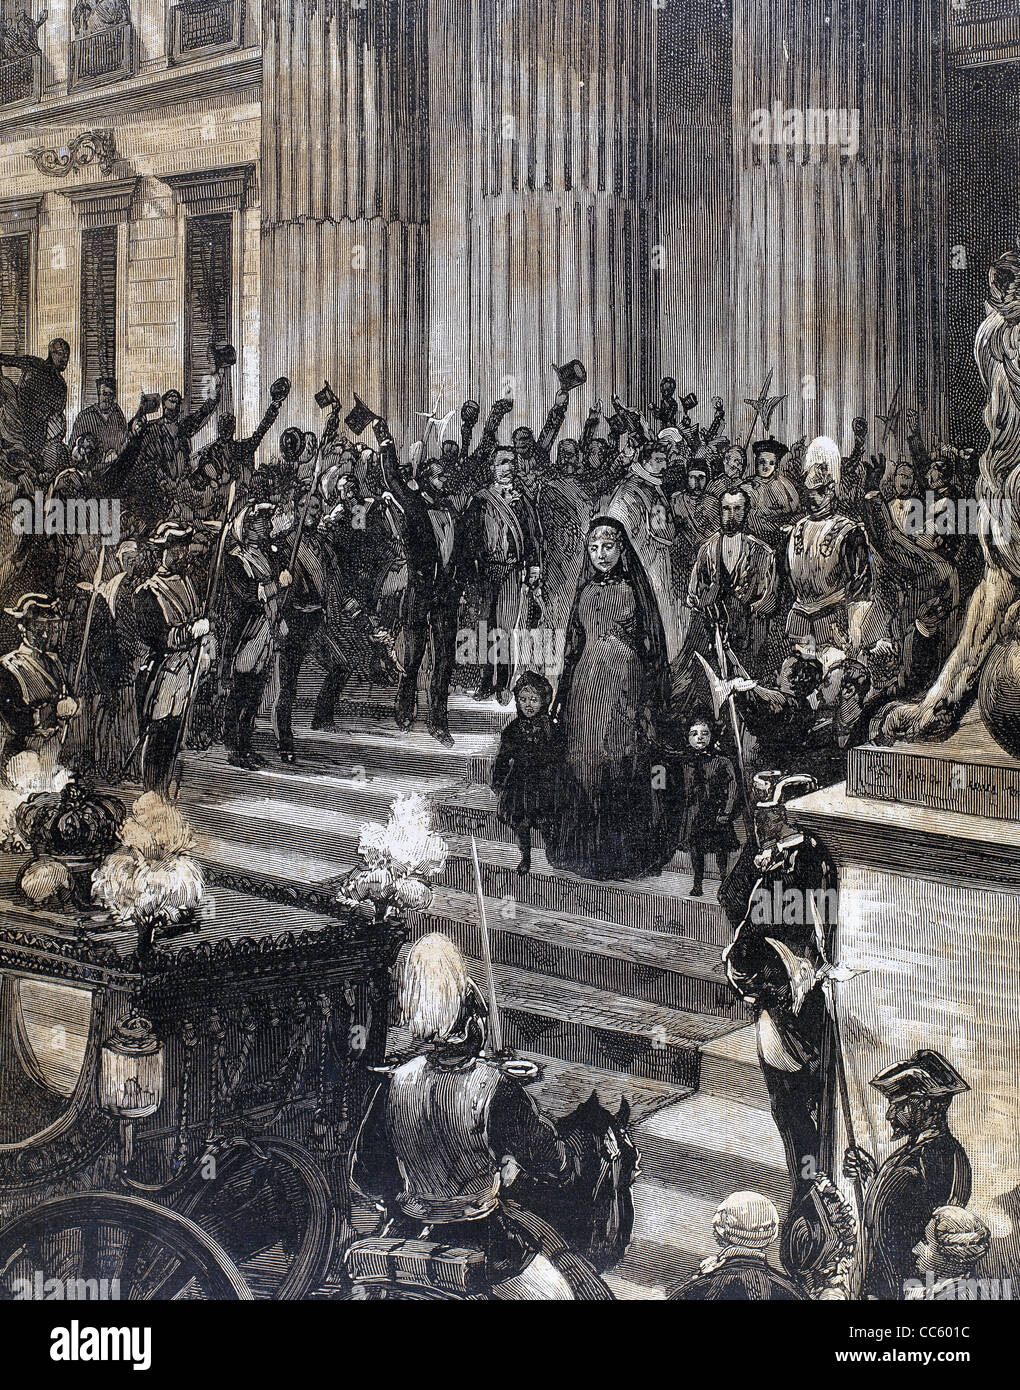 Régence de Marie-christine de Habsbourg-lorraine (1885-1902). La reine régente (1885-1902) du Congrès. Madrid. L'Espagne. Banque D'Images